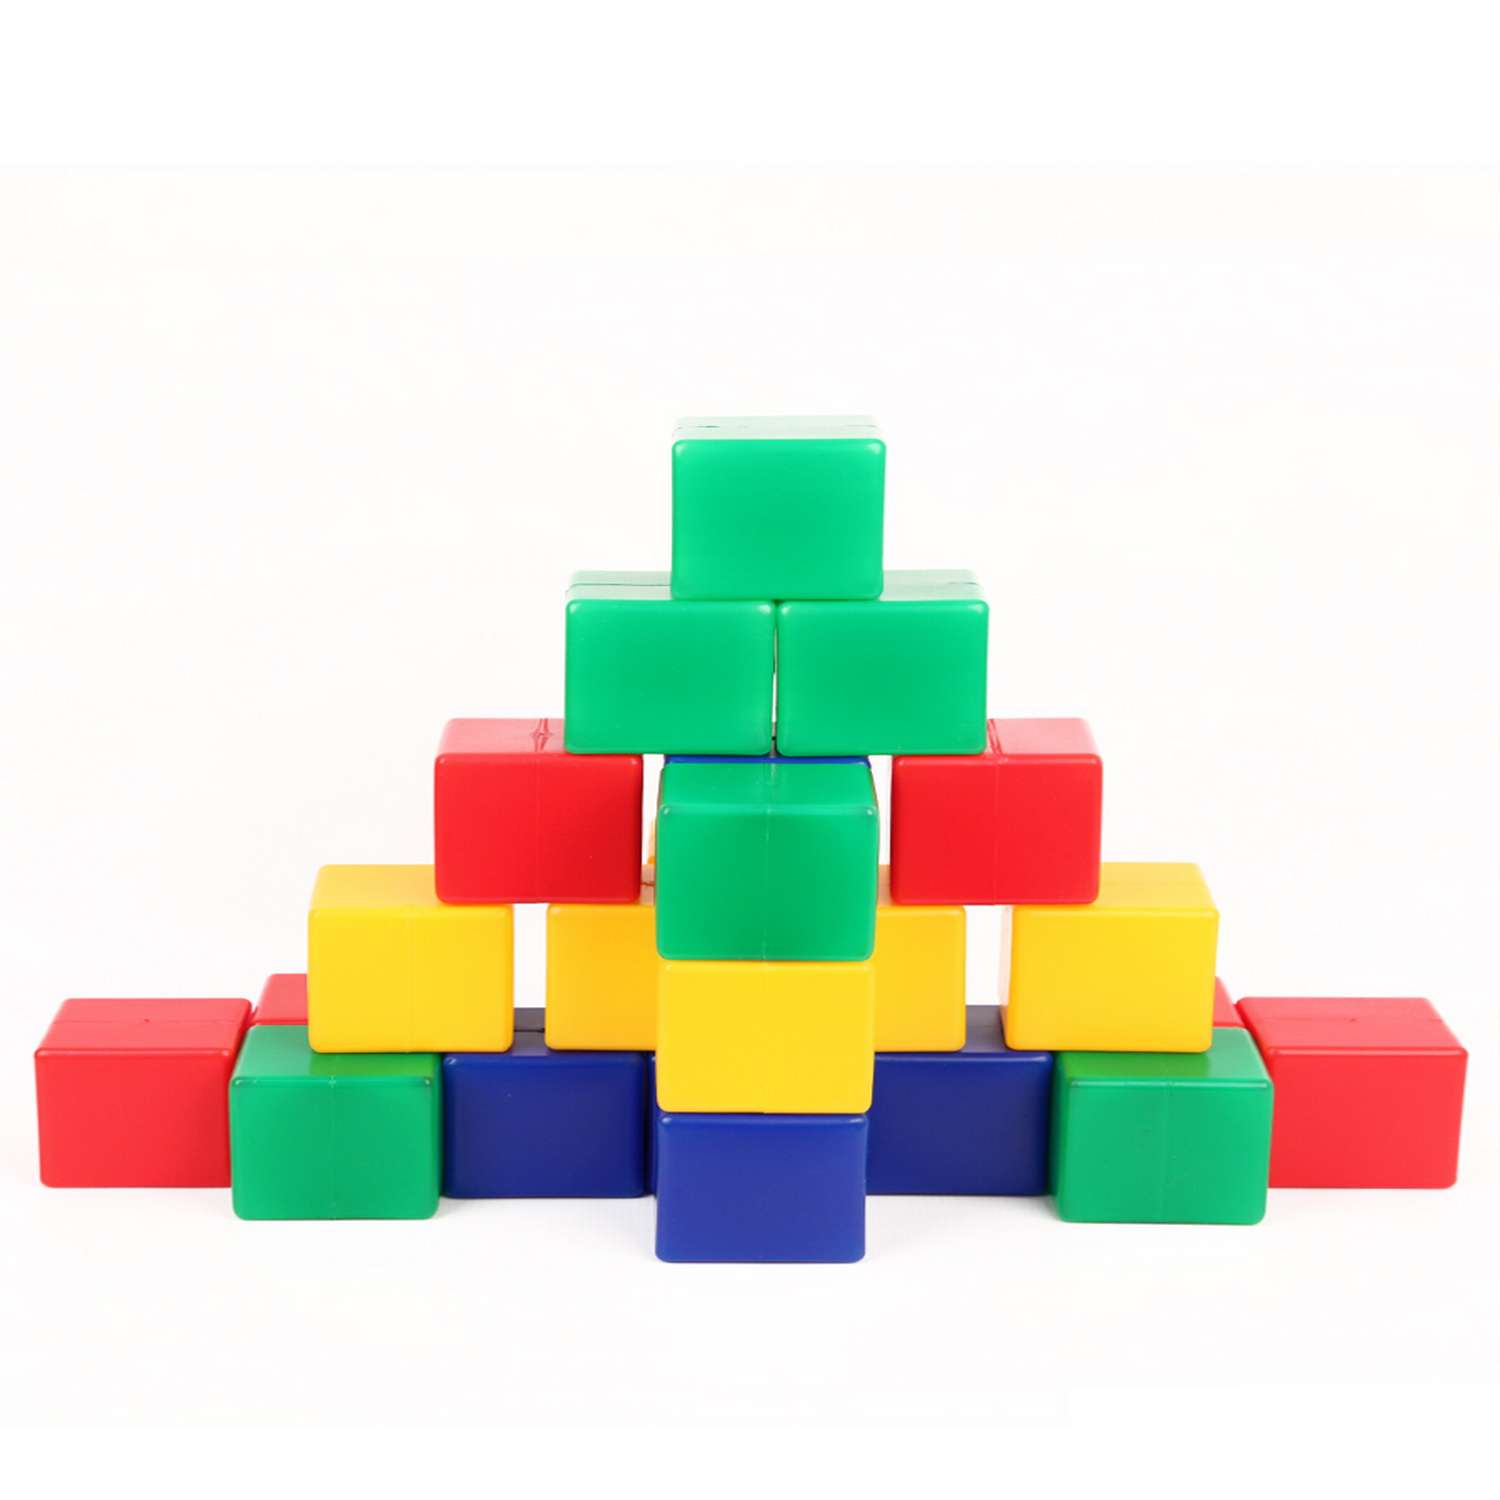 Кубики детские крупные Green Plast 8см*8см конструктор 24 штуки - фото 2